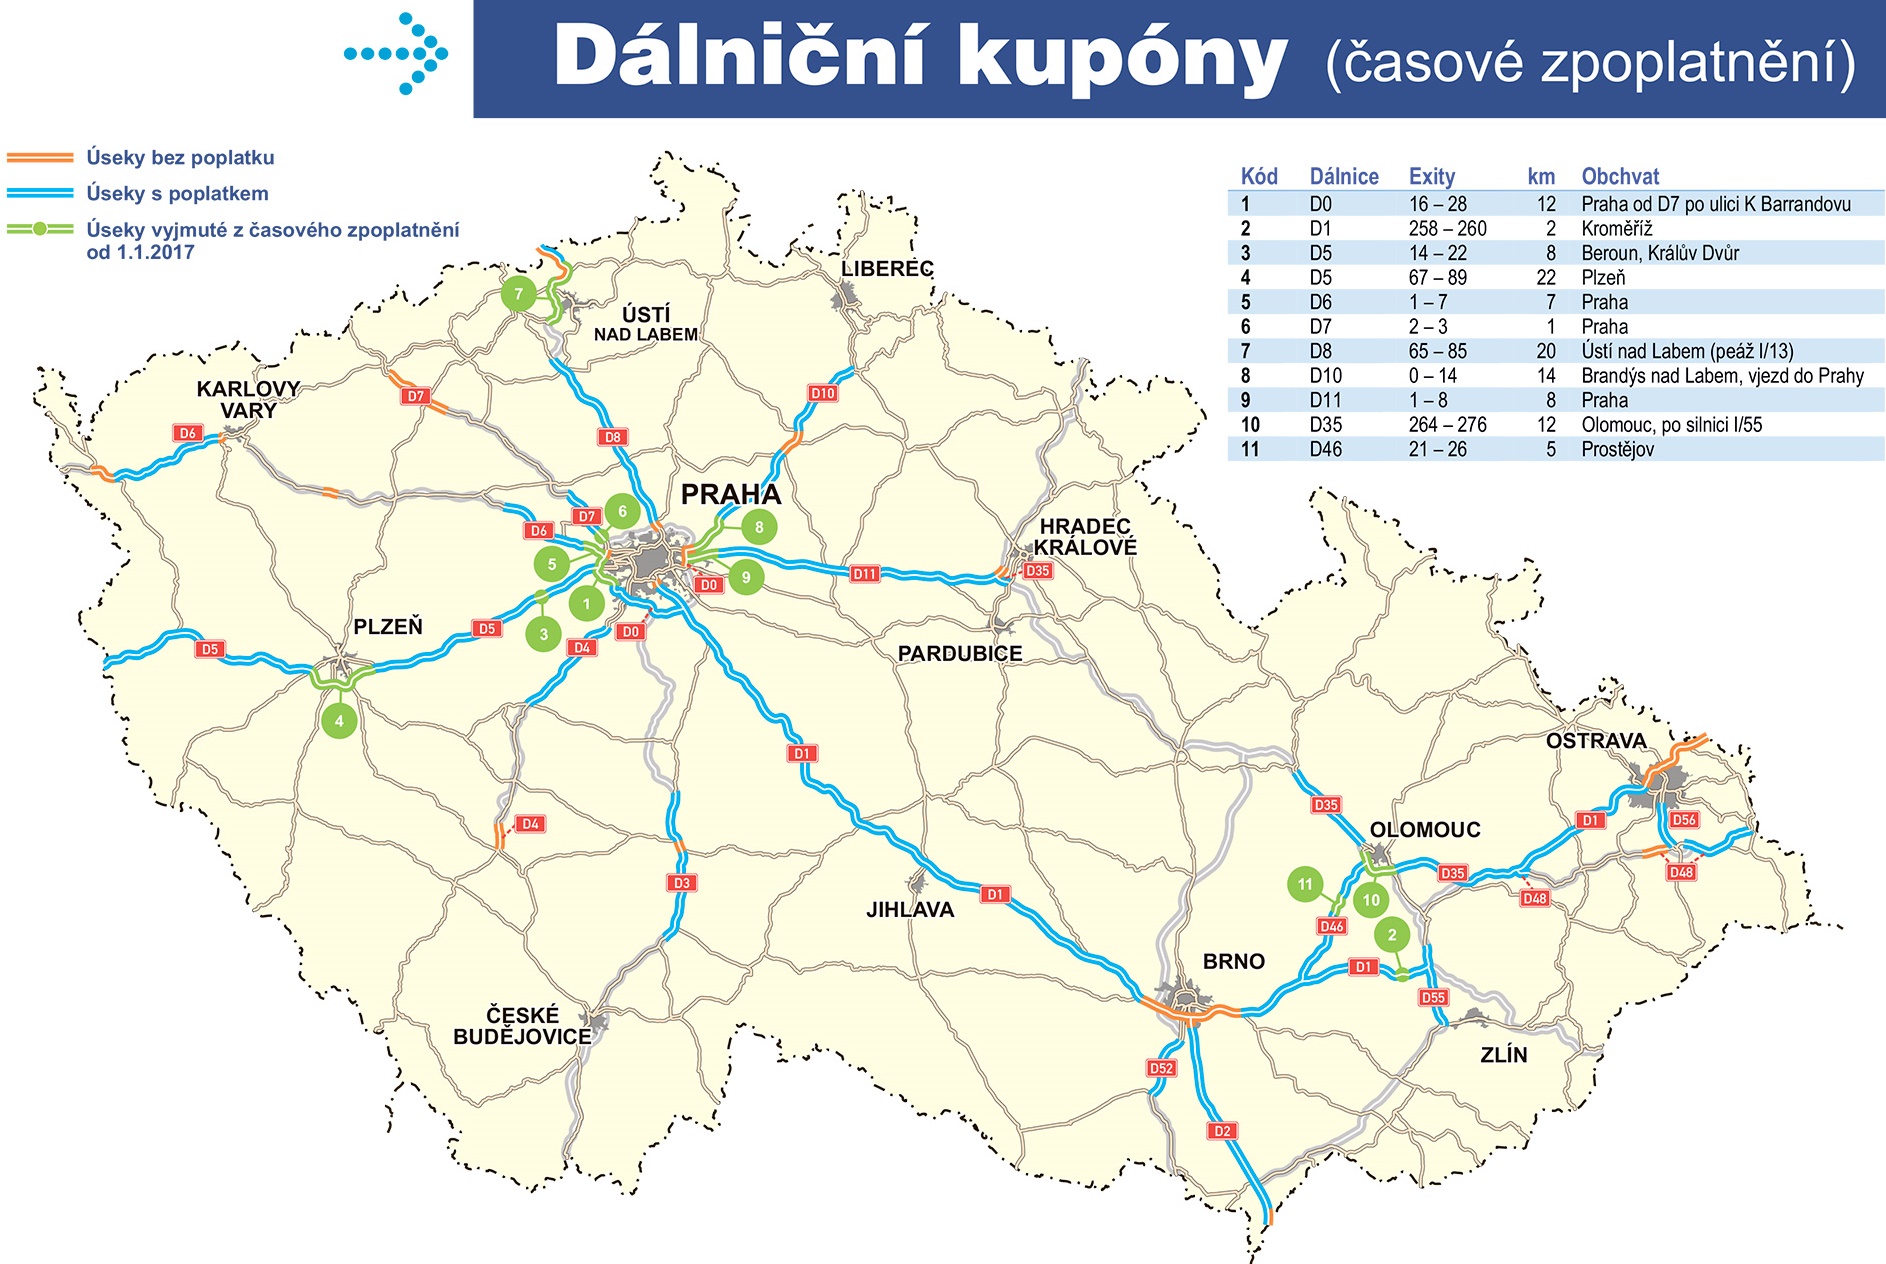 Úseky dálnic s a bez poplatku v České republice (kde je třeba dálniční kupón)